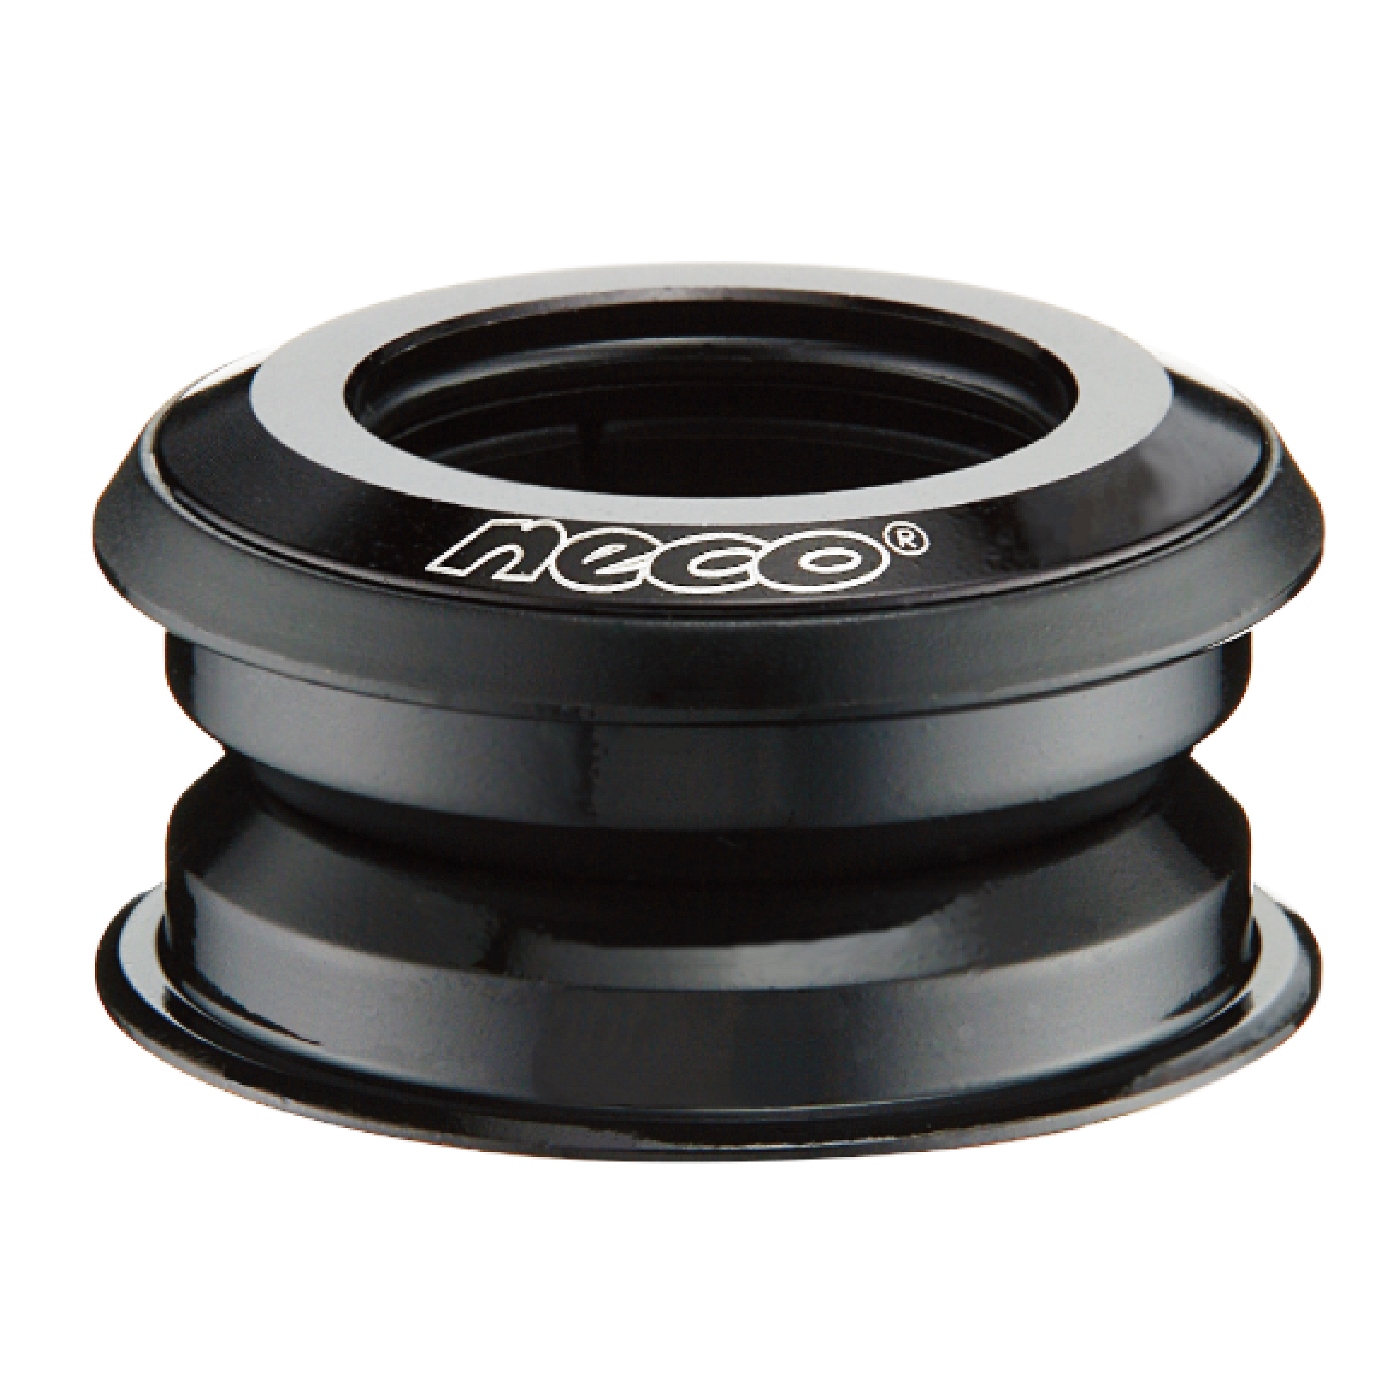 Taza de Direccion NECO H172 1 1/8” Semi Integrada sin Rosca Balero Sellado Aluminio Negro Cajita